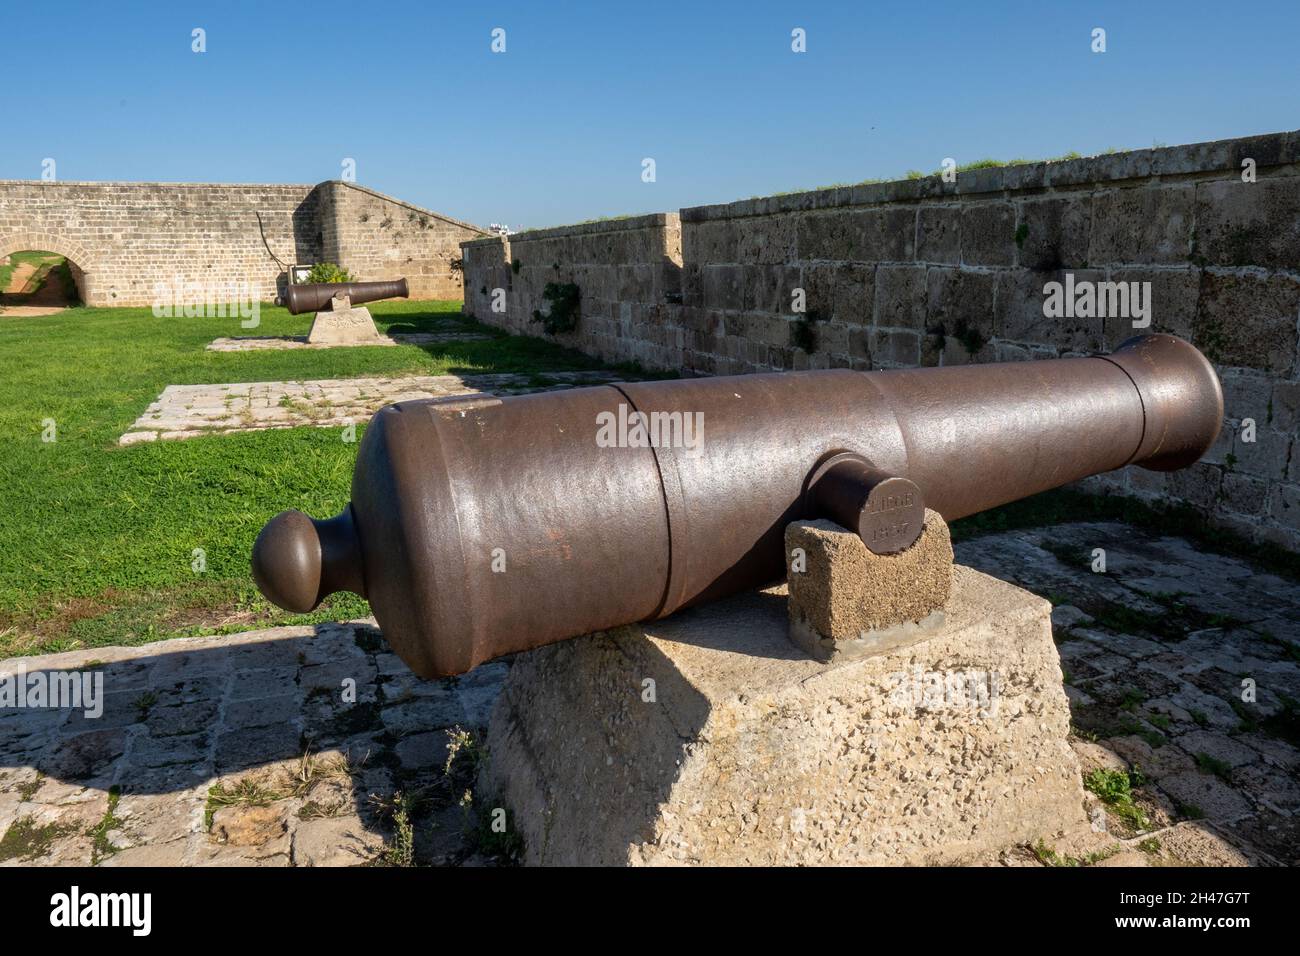 Canons anciens et rouillés sur les murs fortifiés de la vieille ville d'Acre Israël, protégeant le port et la ville de l'invasion navale.Aujourd'hui une esplana historique Banque D'Images